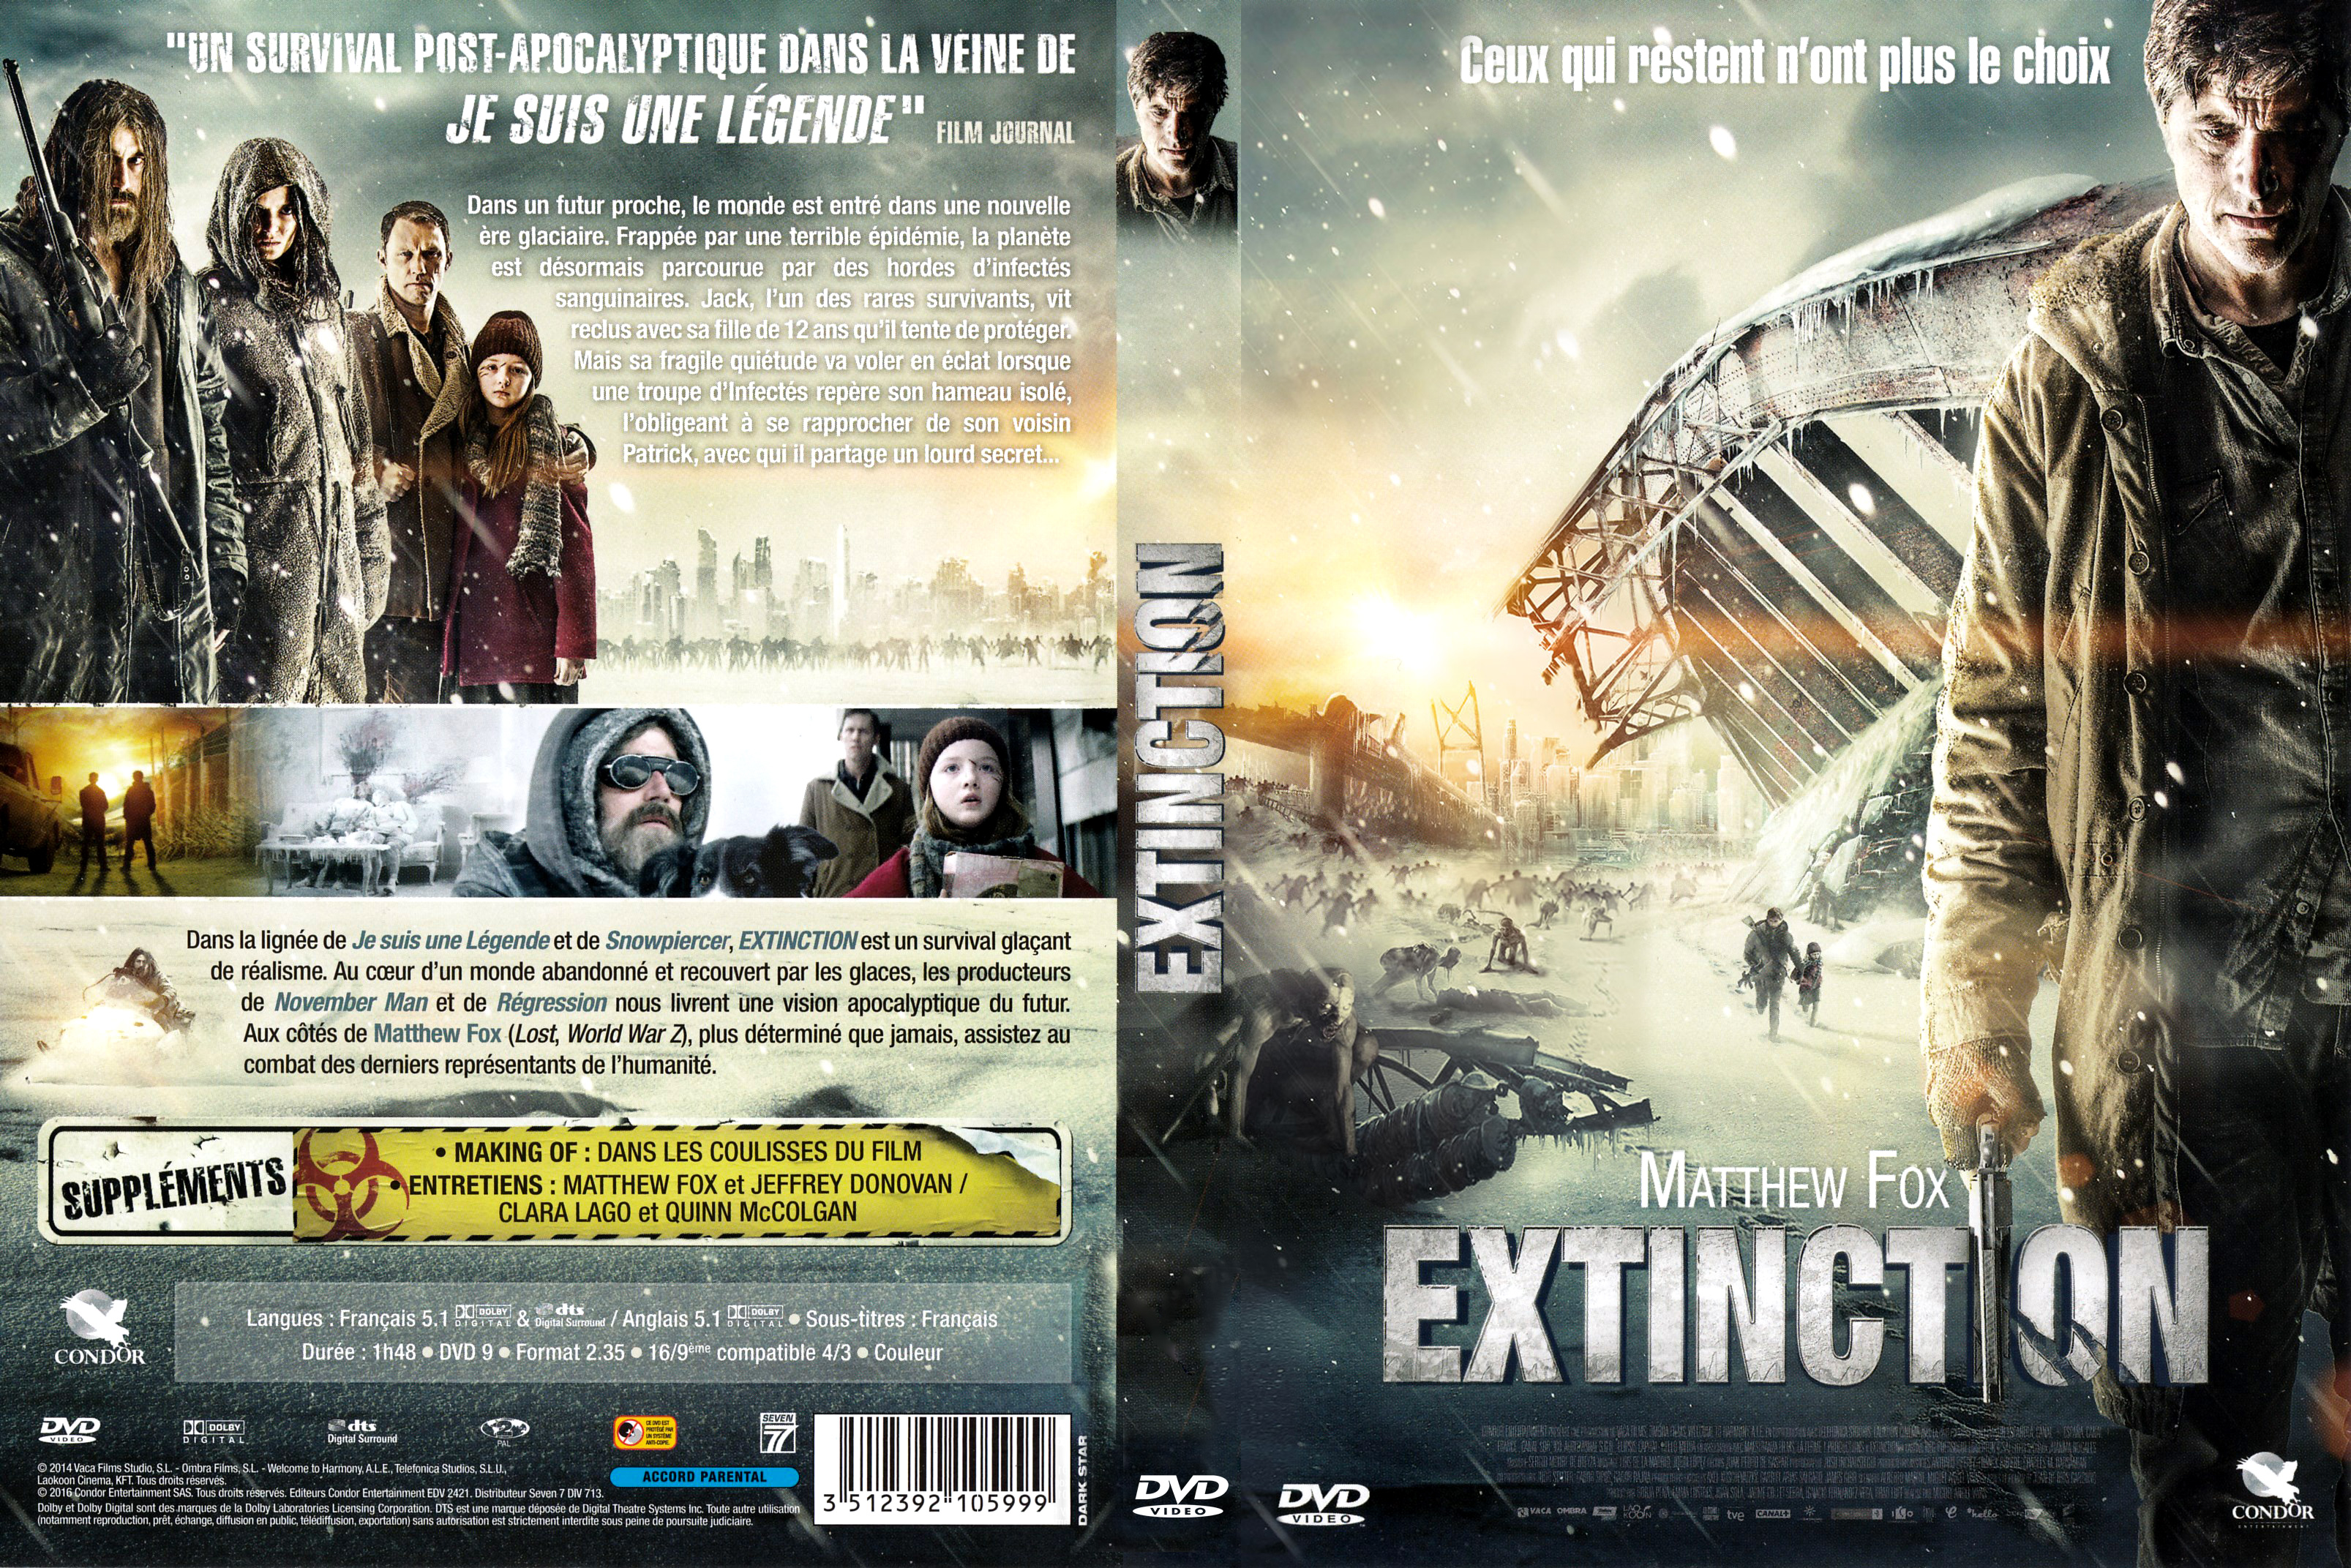 Jaquette DVD Extinction